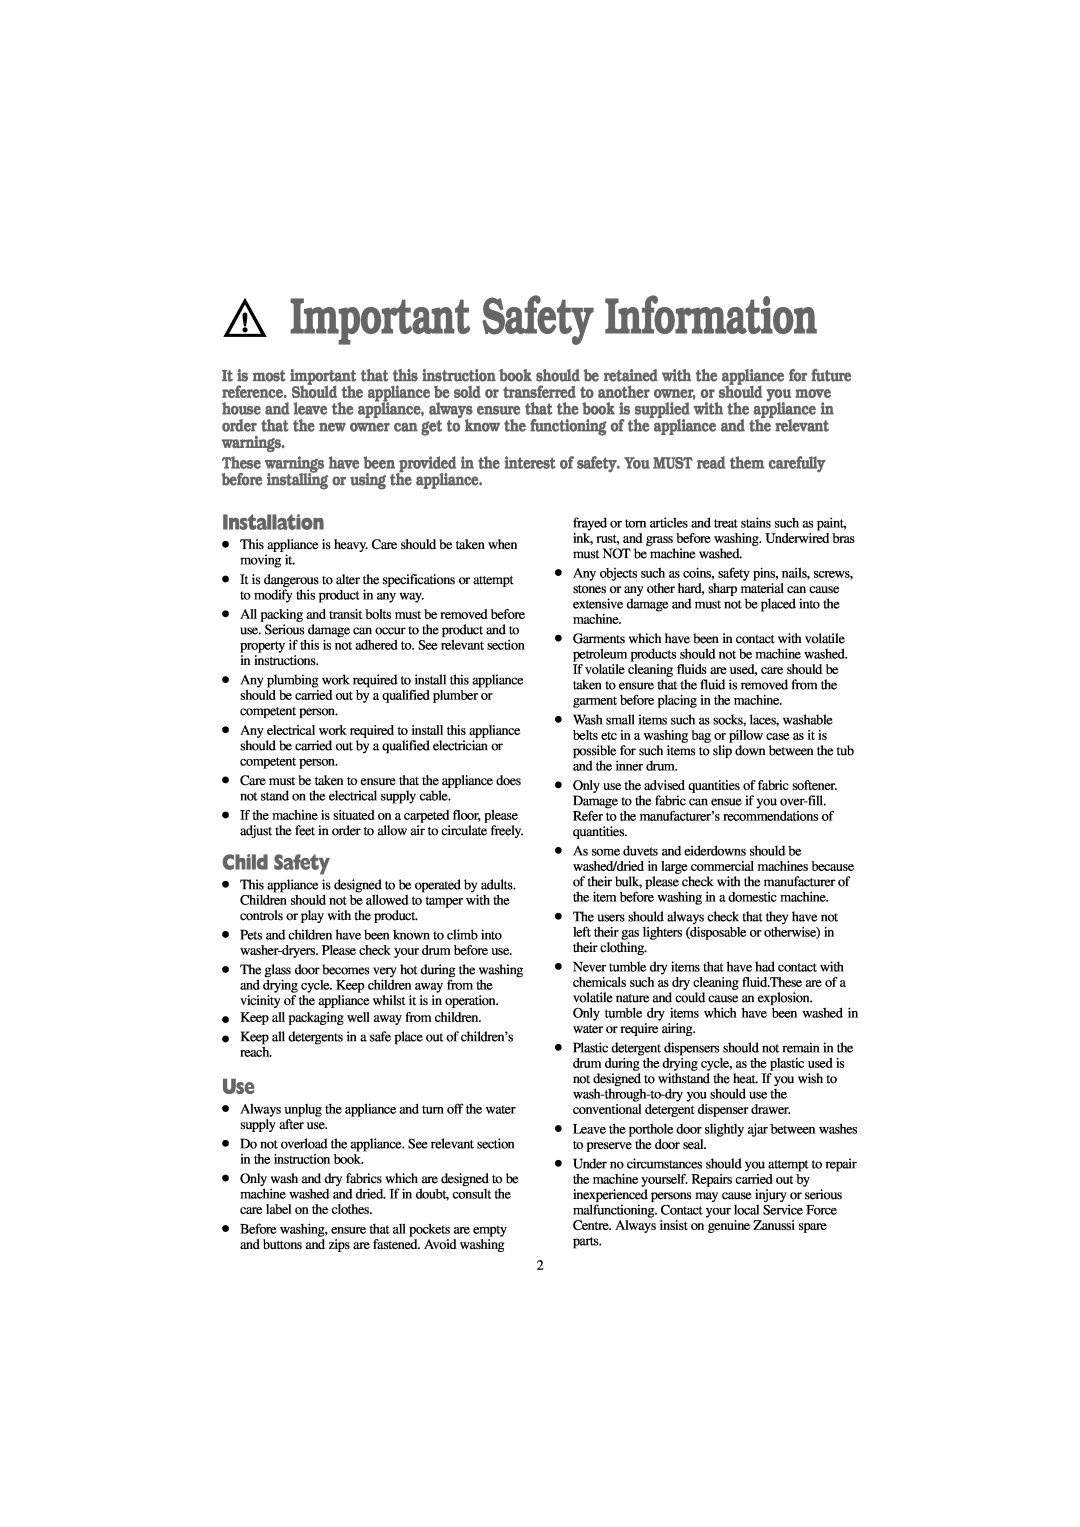 Zanussi WJD 1257 S, WJD 1457 W, WJD 1357 S, WJD 1257 W manual Installation, Child Safety, Important Safety Information 